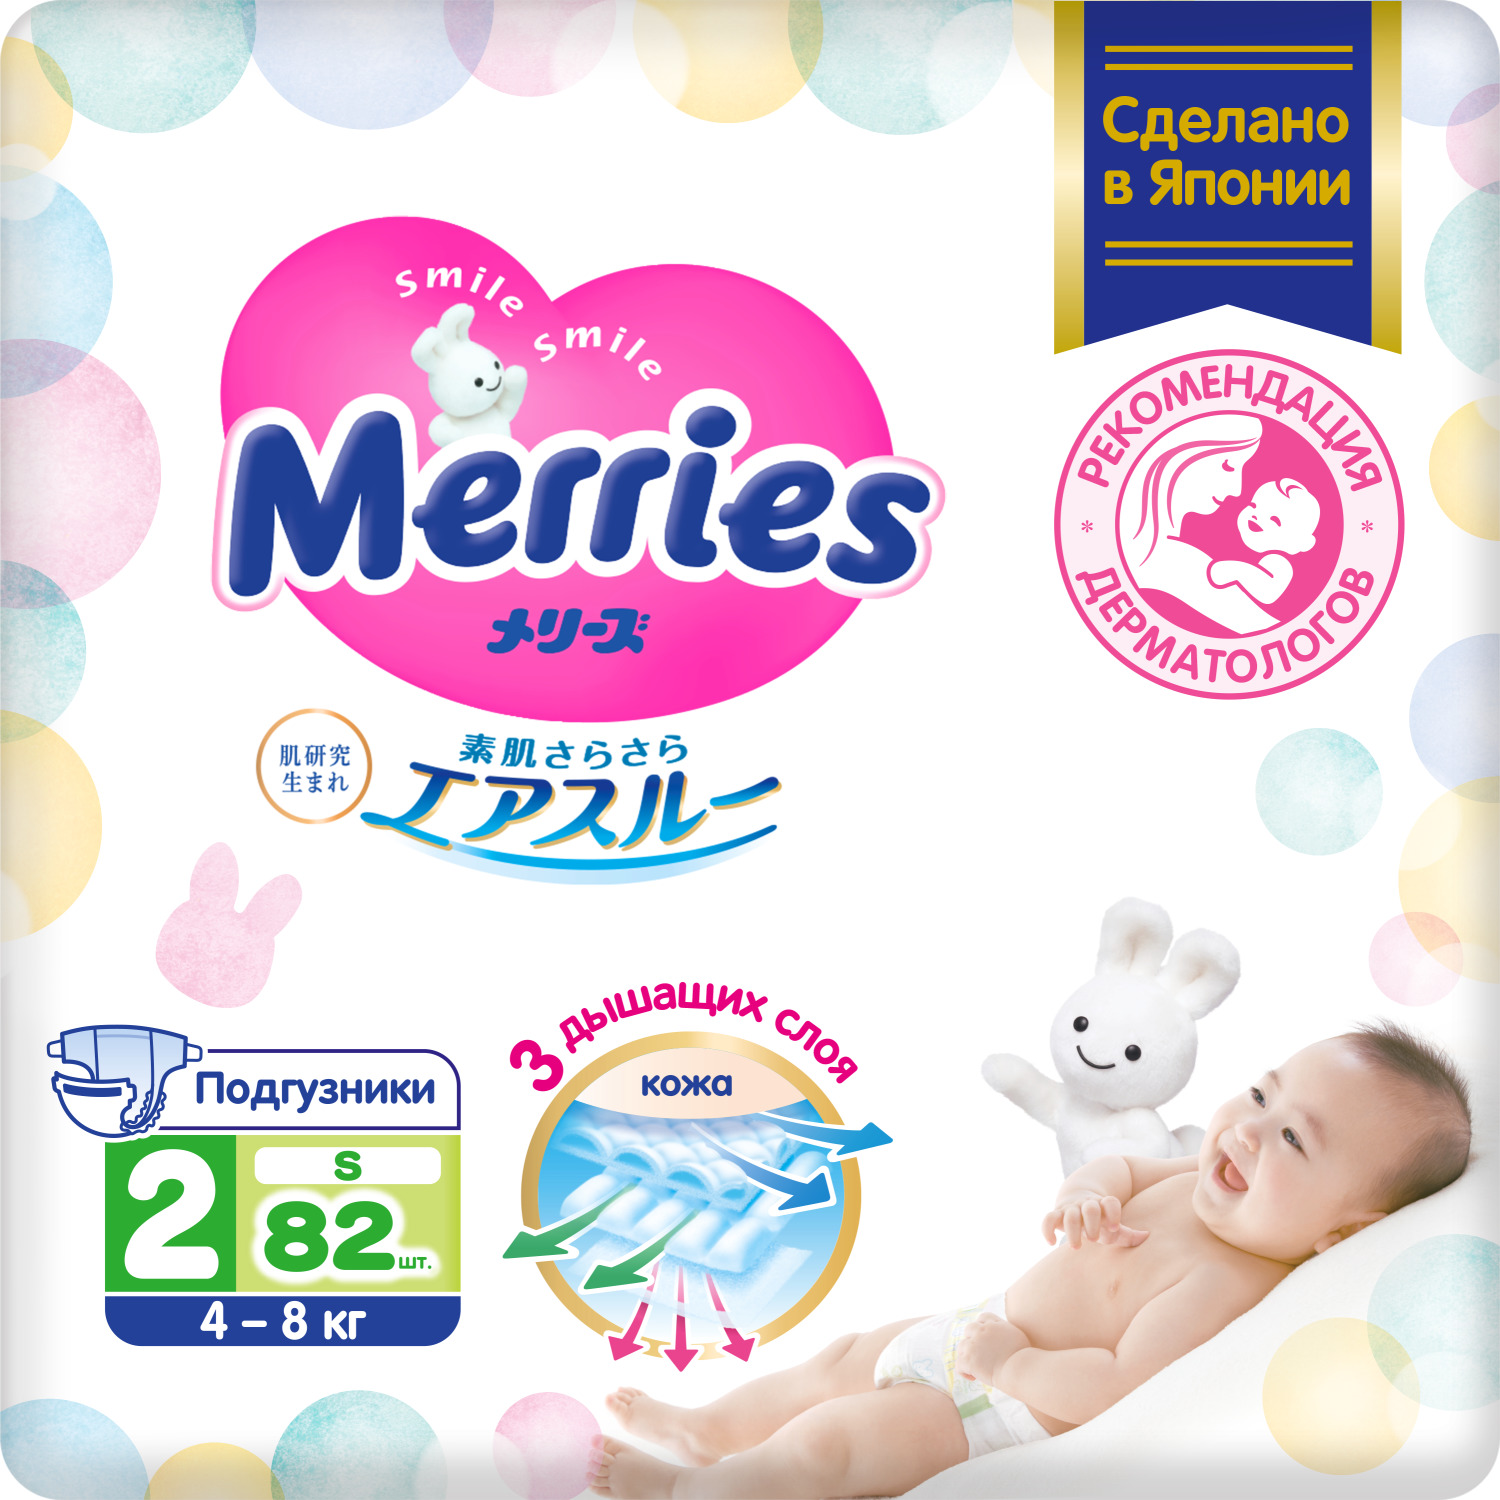 Подгузники Merries для детей размер S 4-8 кг, 82 шт подгузники moony s 4 8 кг 82 шт